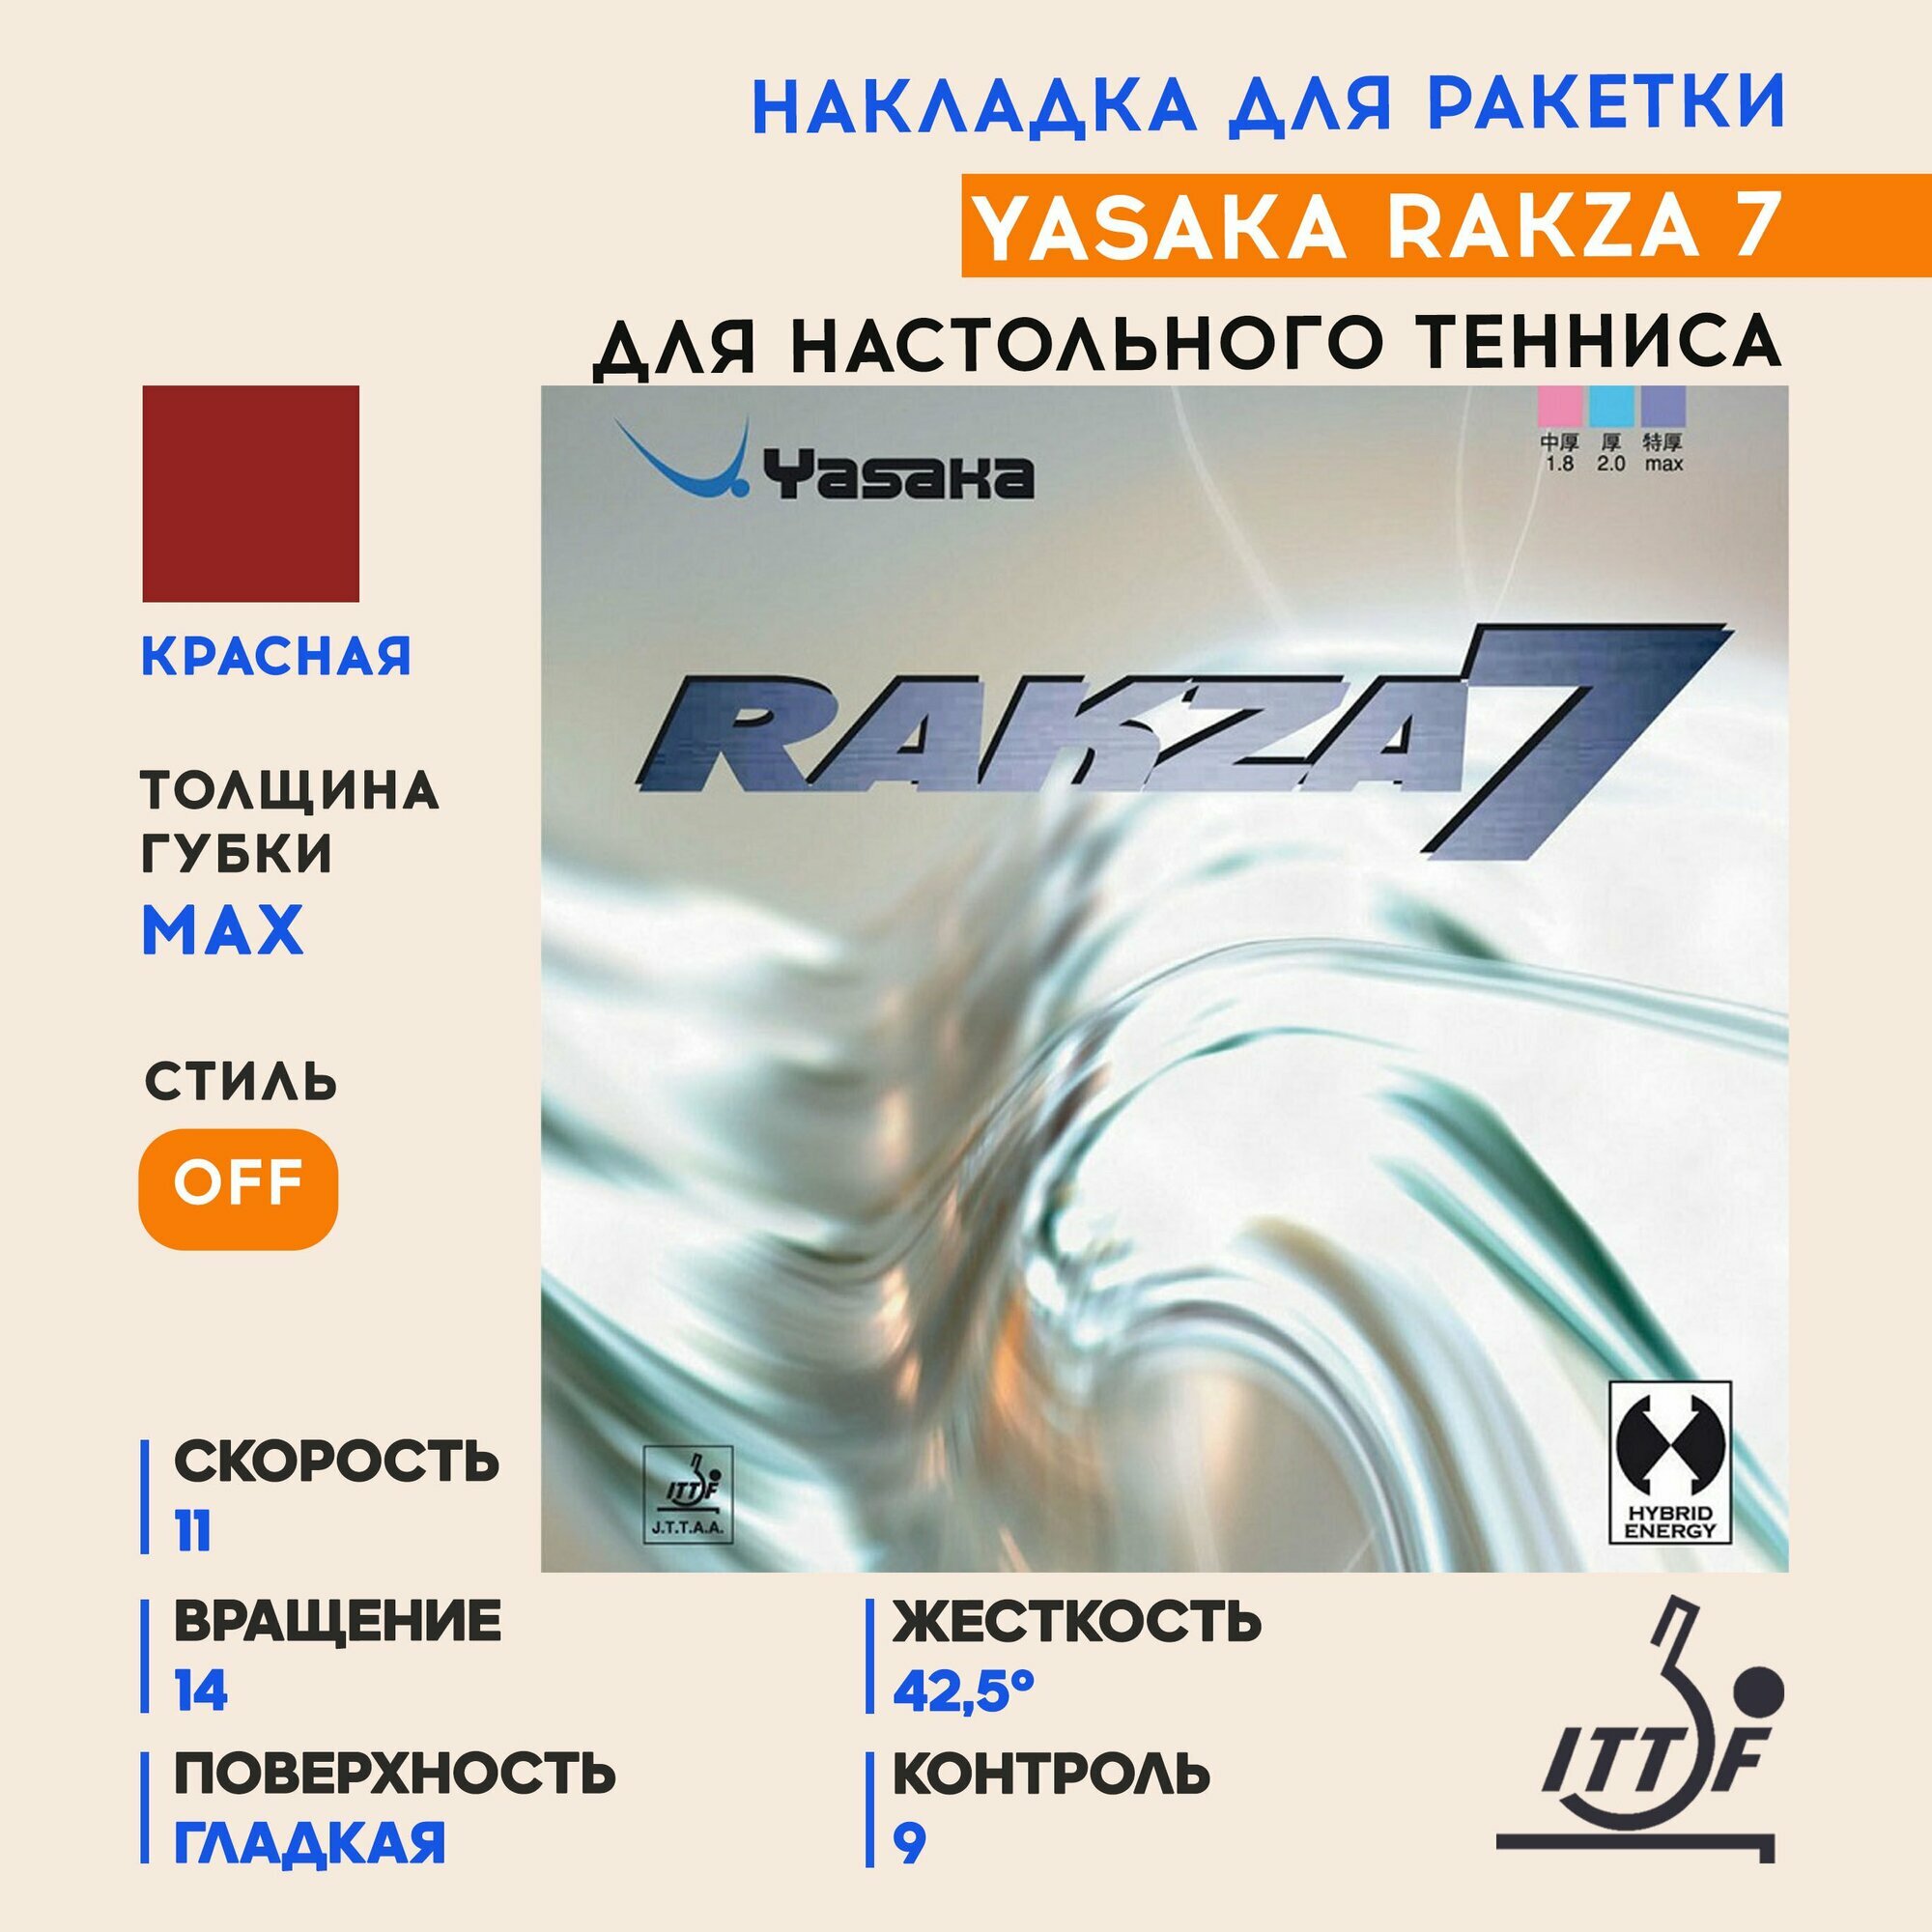 Накладка для ракетки настольного тенниса Rakza 7 (цвет красный, толщина max)